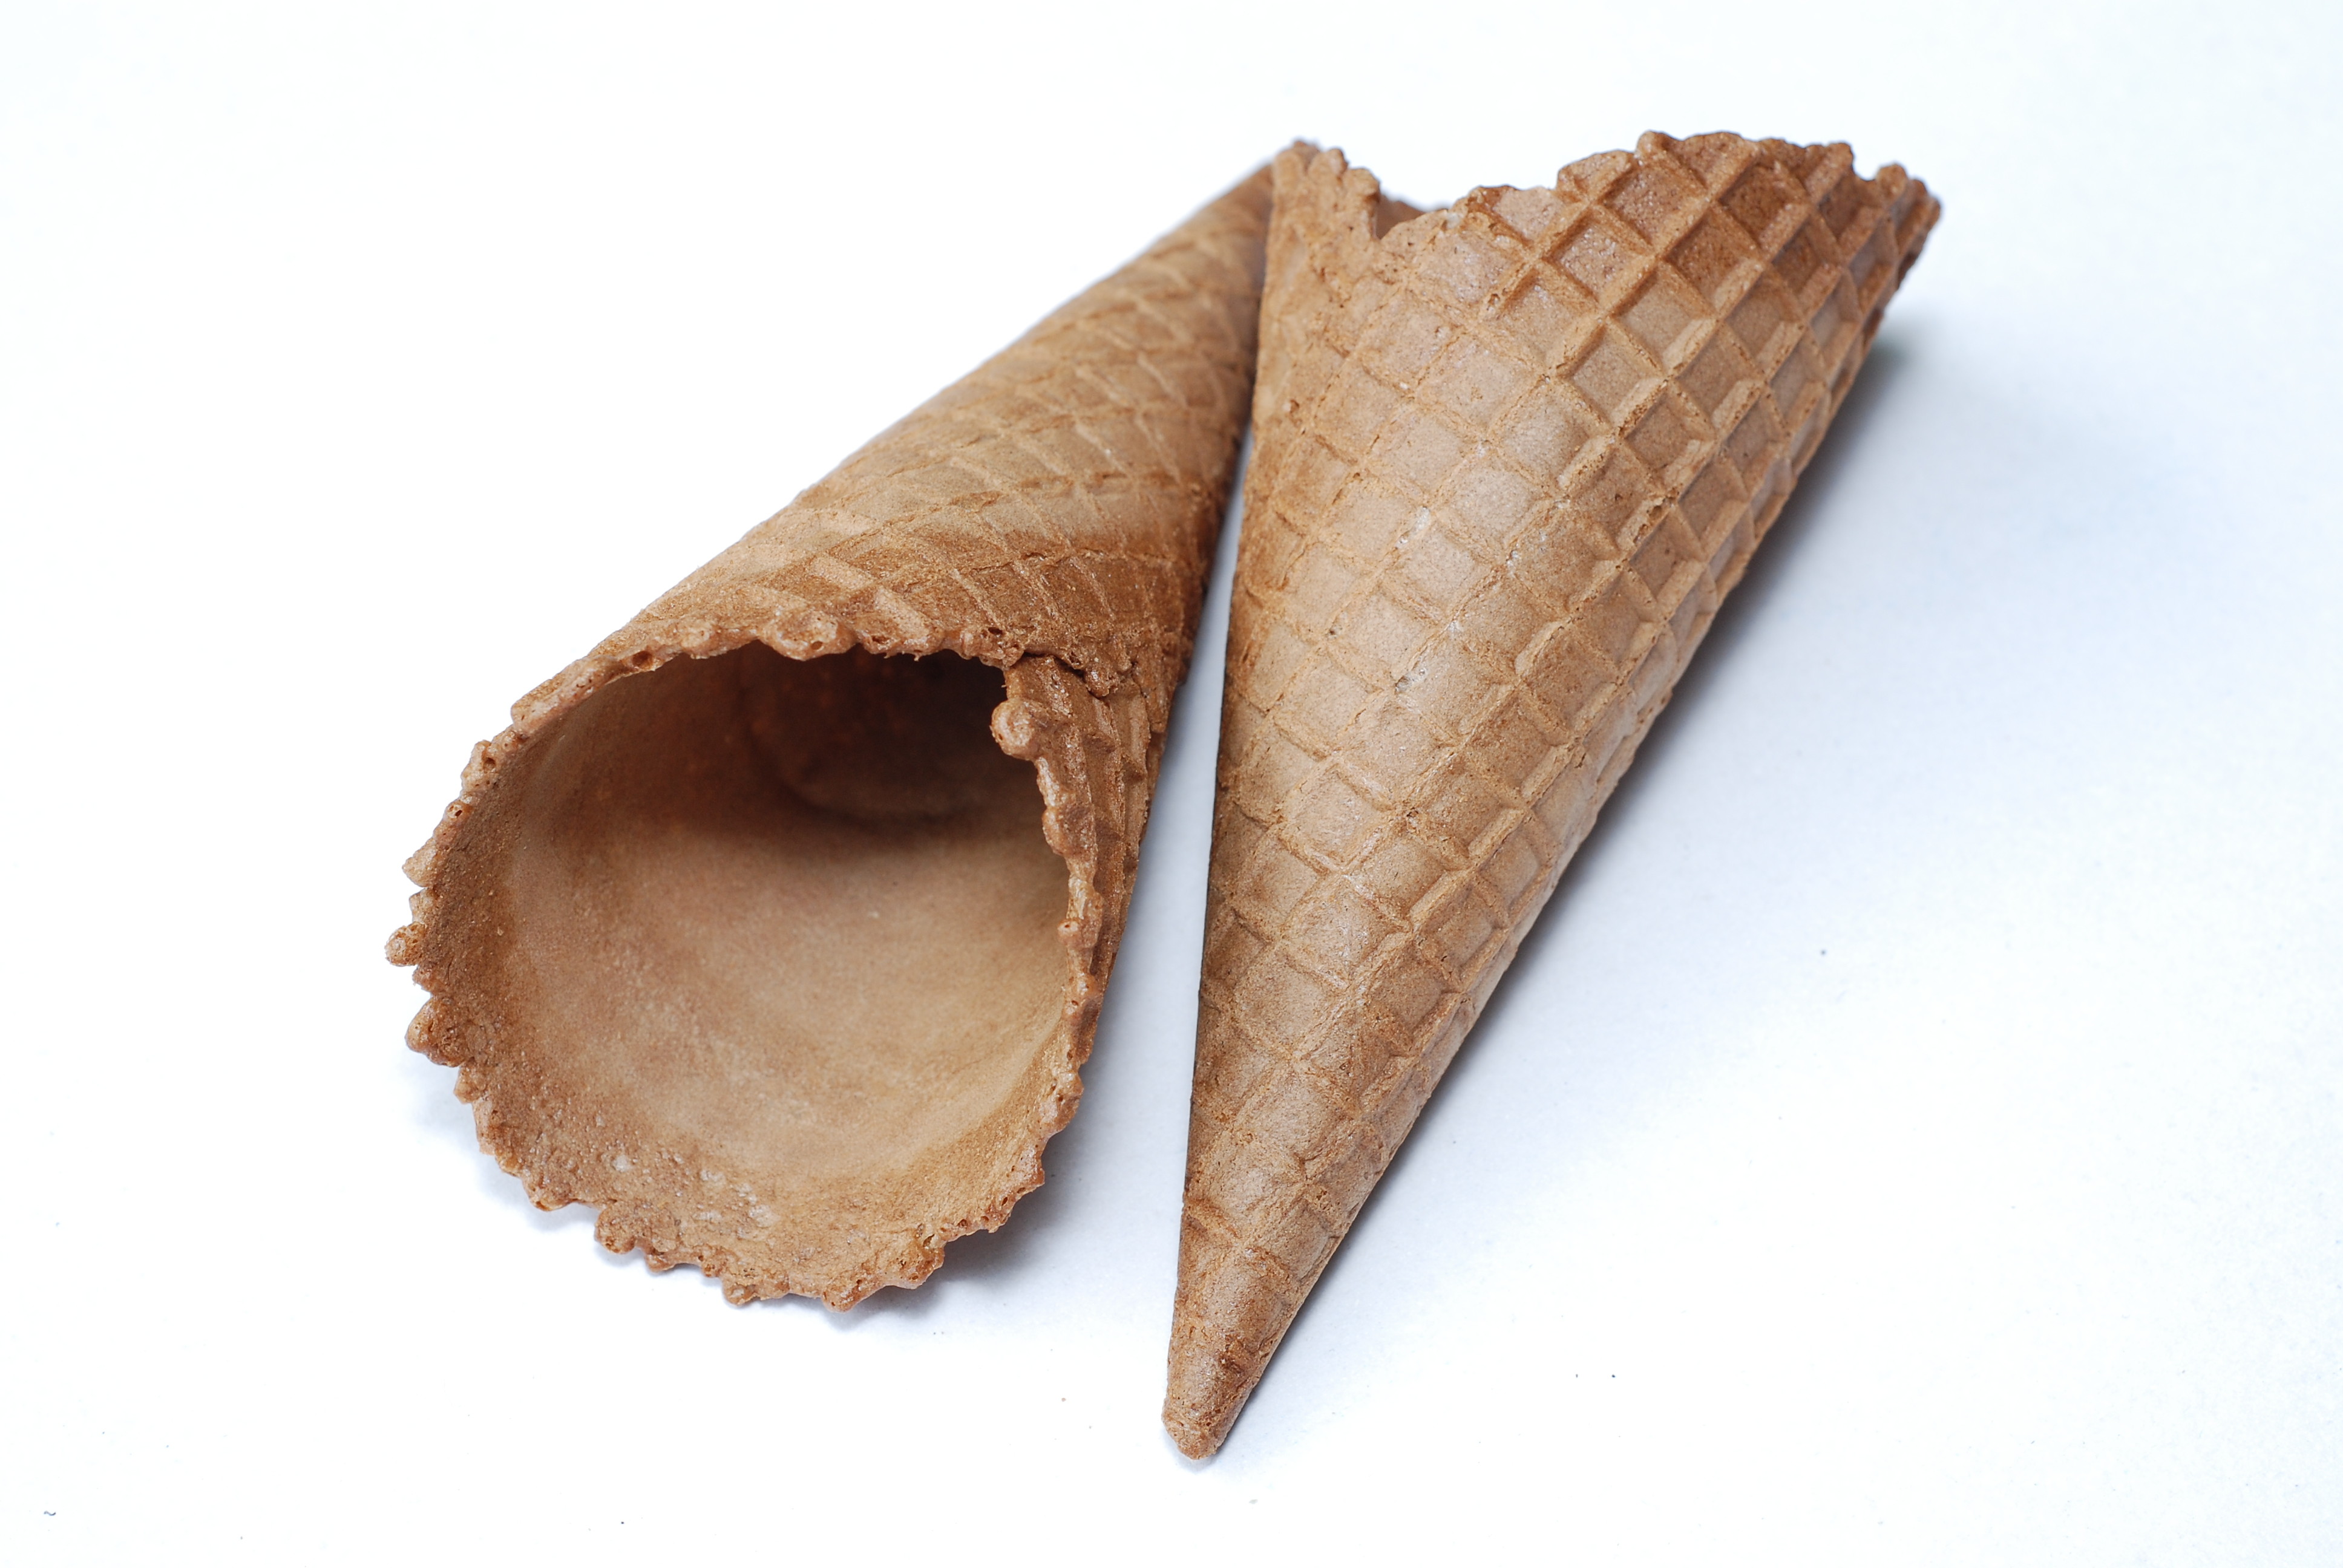 23 ° Açılı Dondurma İle İlgili Üretim, Çikolatalı Dondurma Koni Şekilli